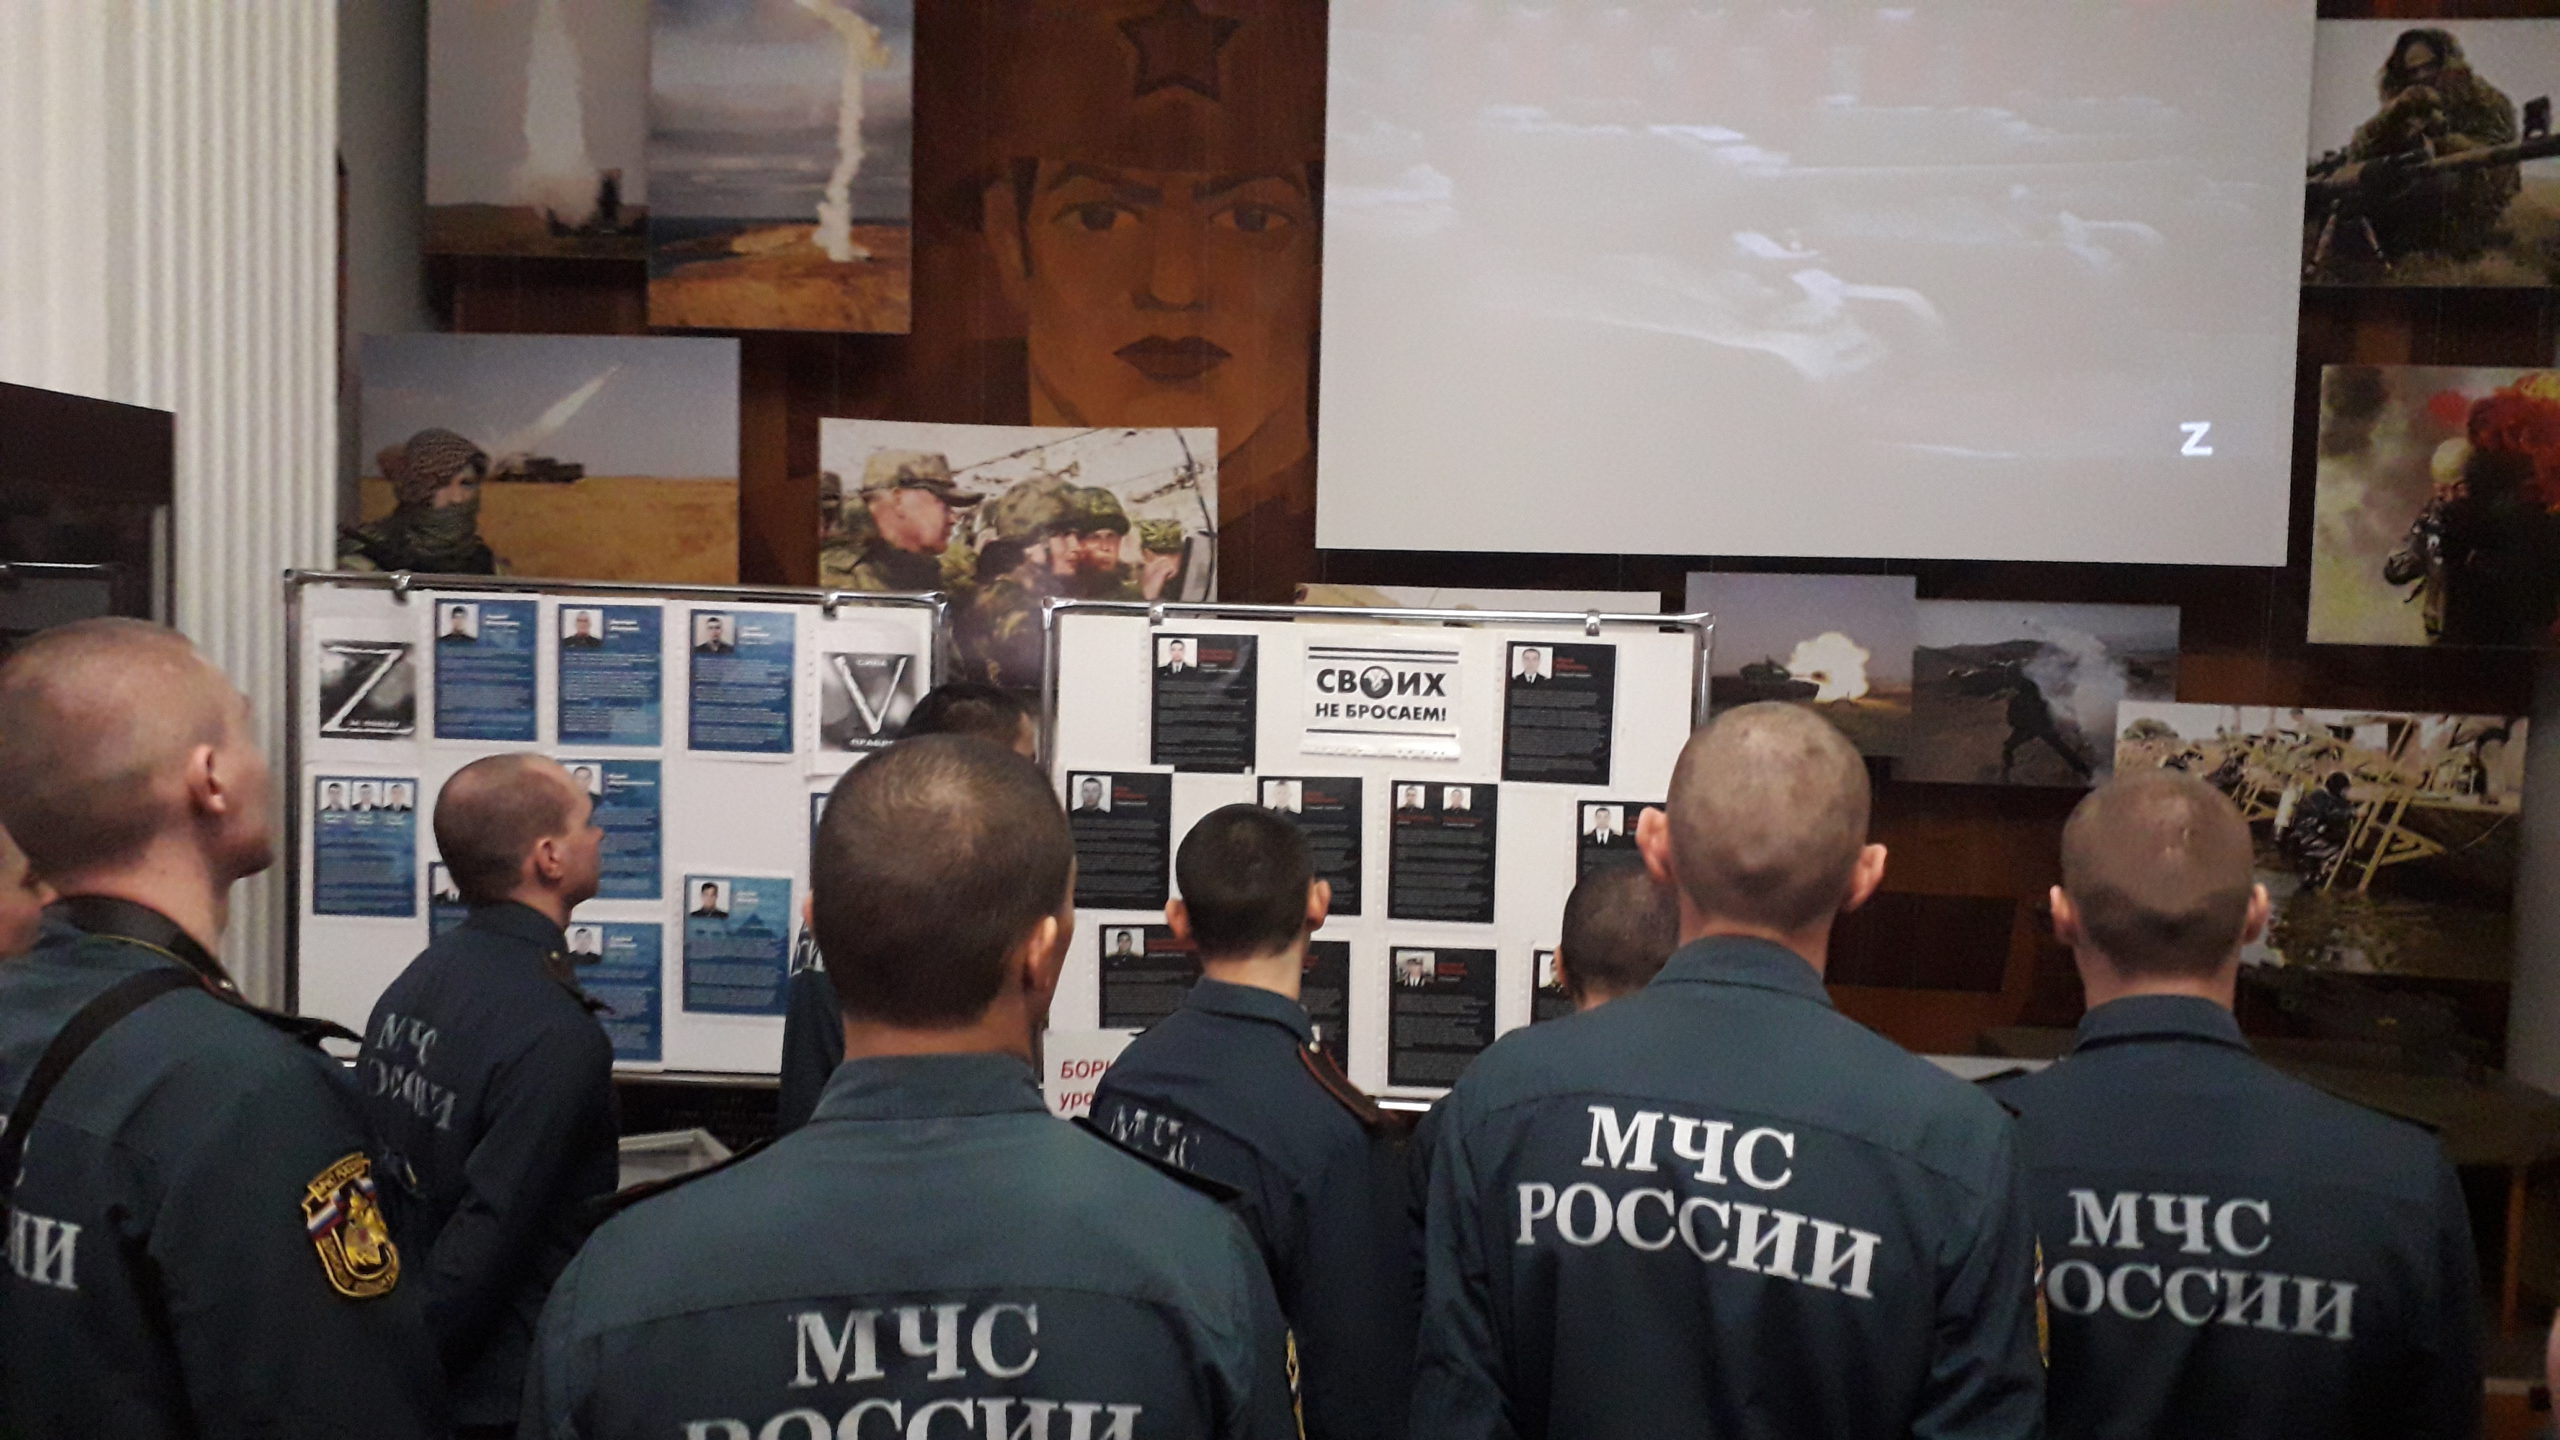 You are currently viewing Тематический видеолекторий «Zа братьев! К победе!», в поддержку военной спецоперации России по денацификации и демилитаризации Украины.